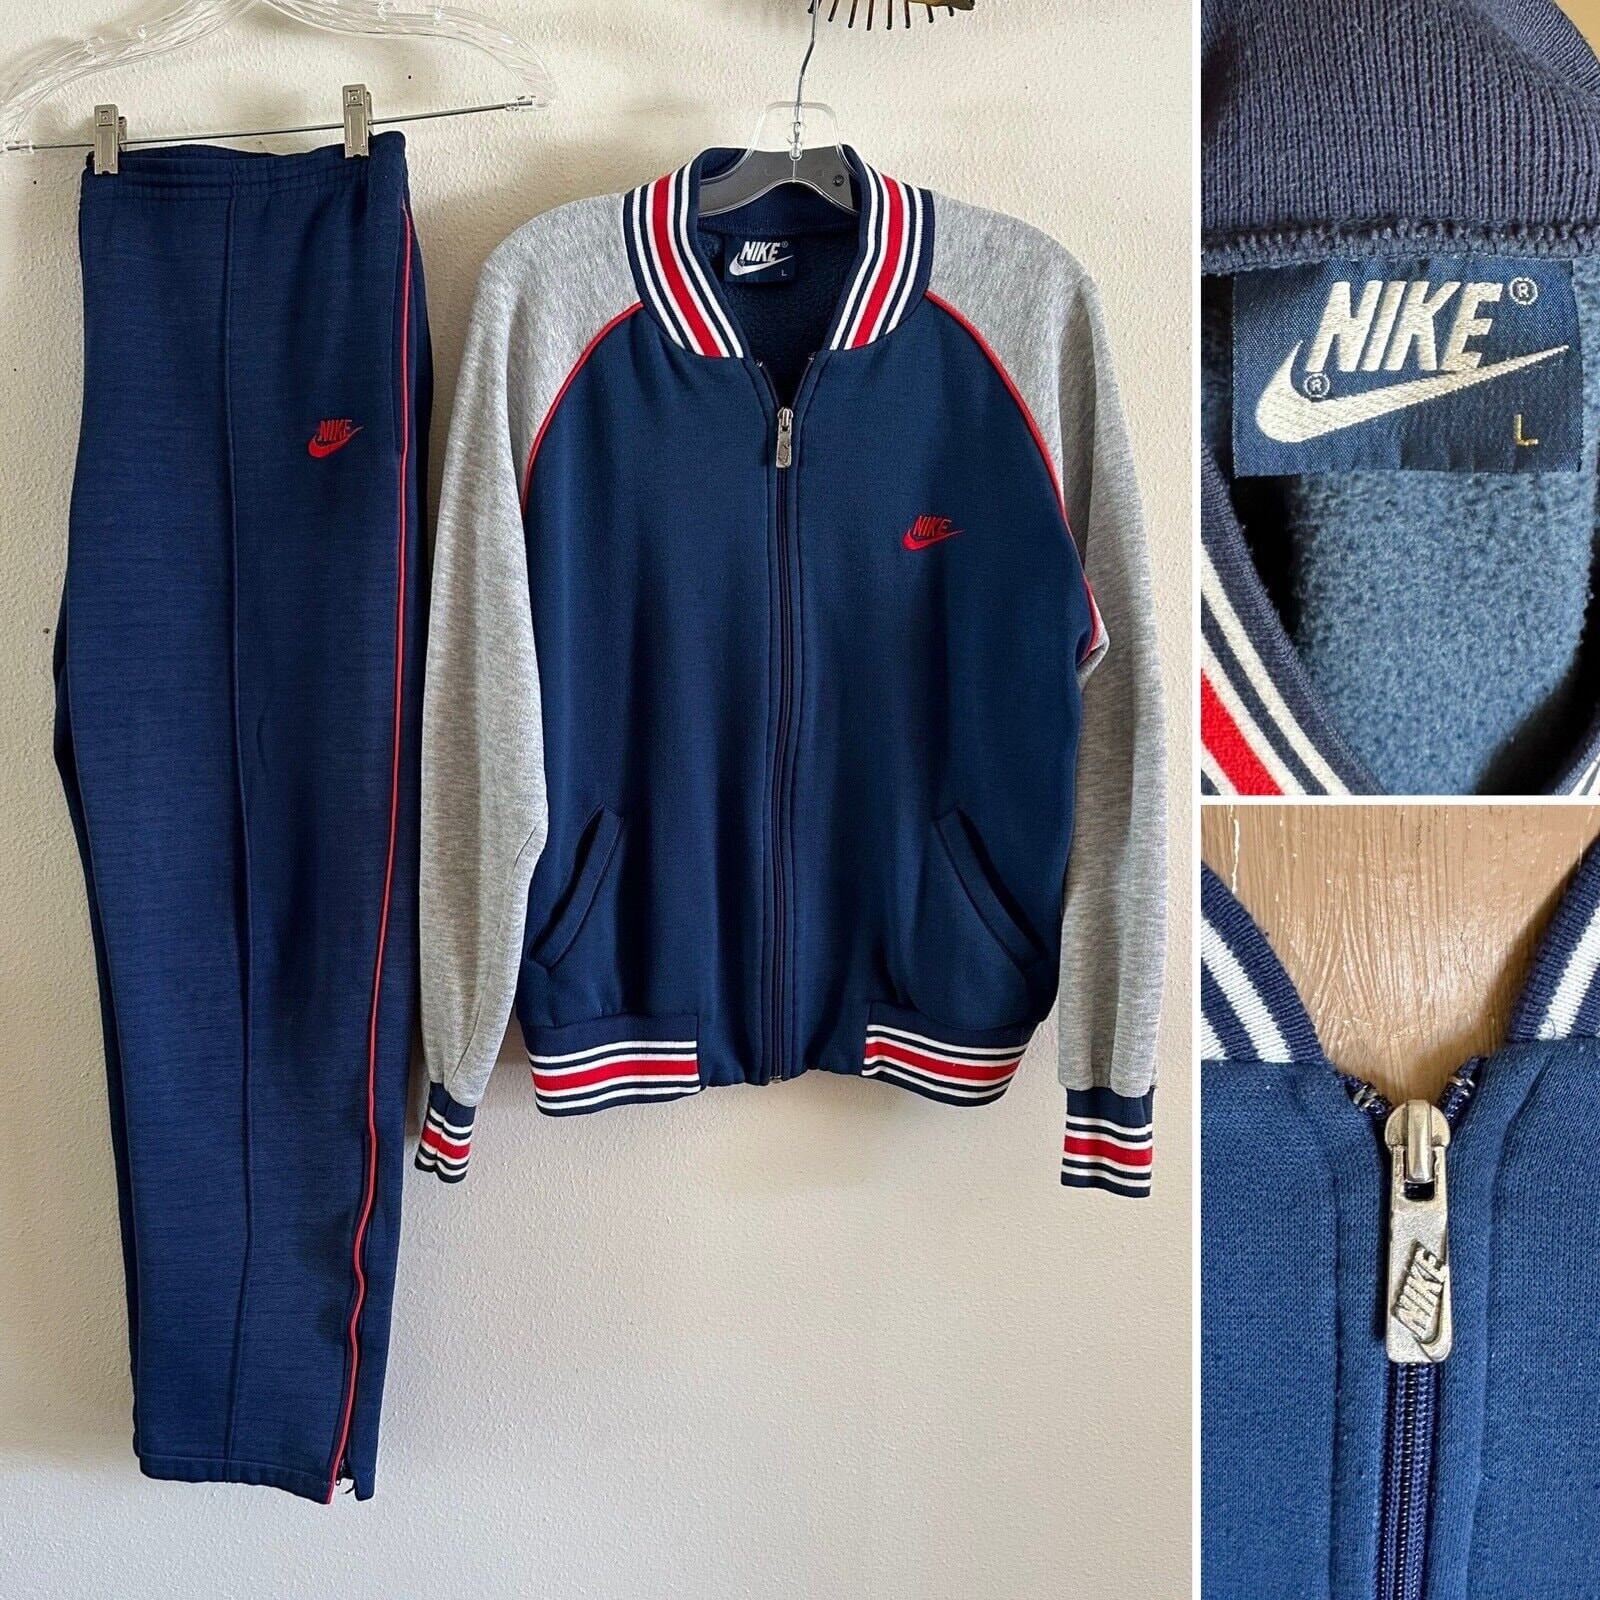 Nike Track Pants 90s Joggers Jogging Track Suit Warm up Suit Blue